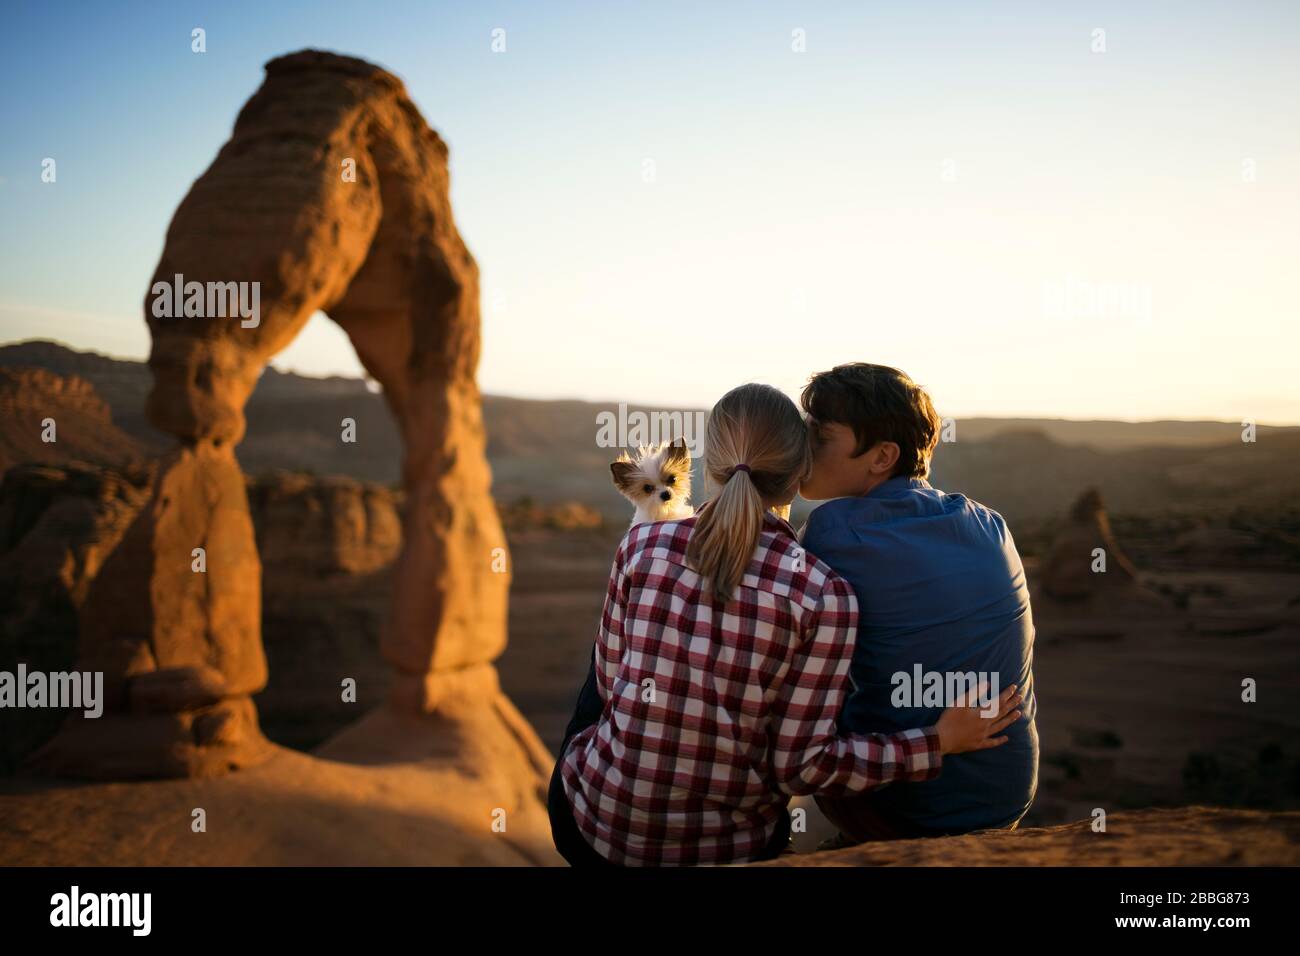 Junger Mann küsst seine Freundin auf die Wange, während ihr Hund über ihre Schulter blickt und im Hintergrund eine malerische Schlucht sieht Stockfoto